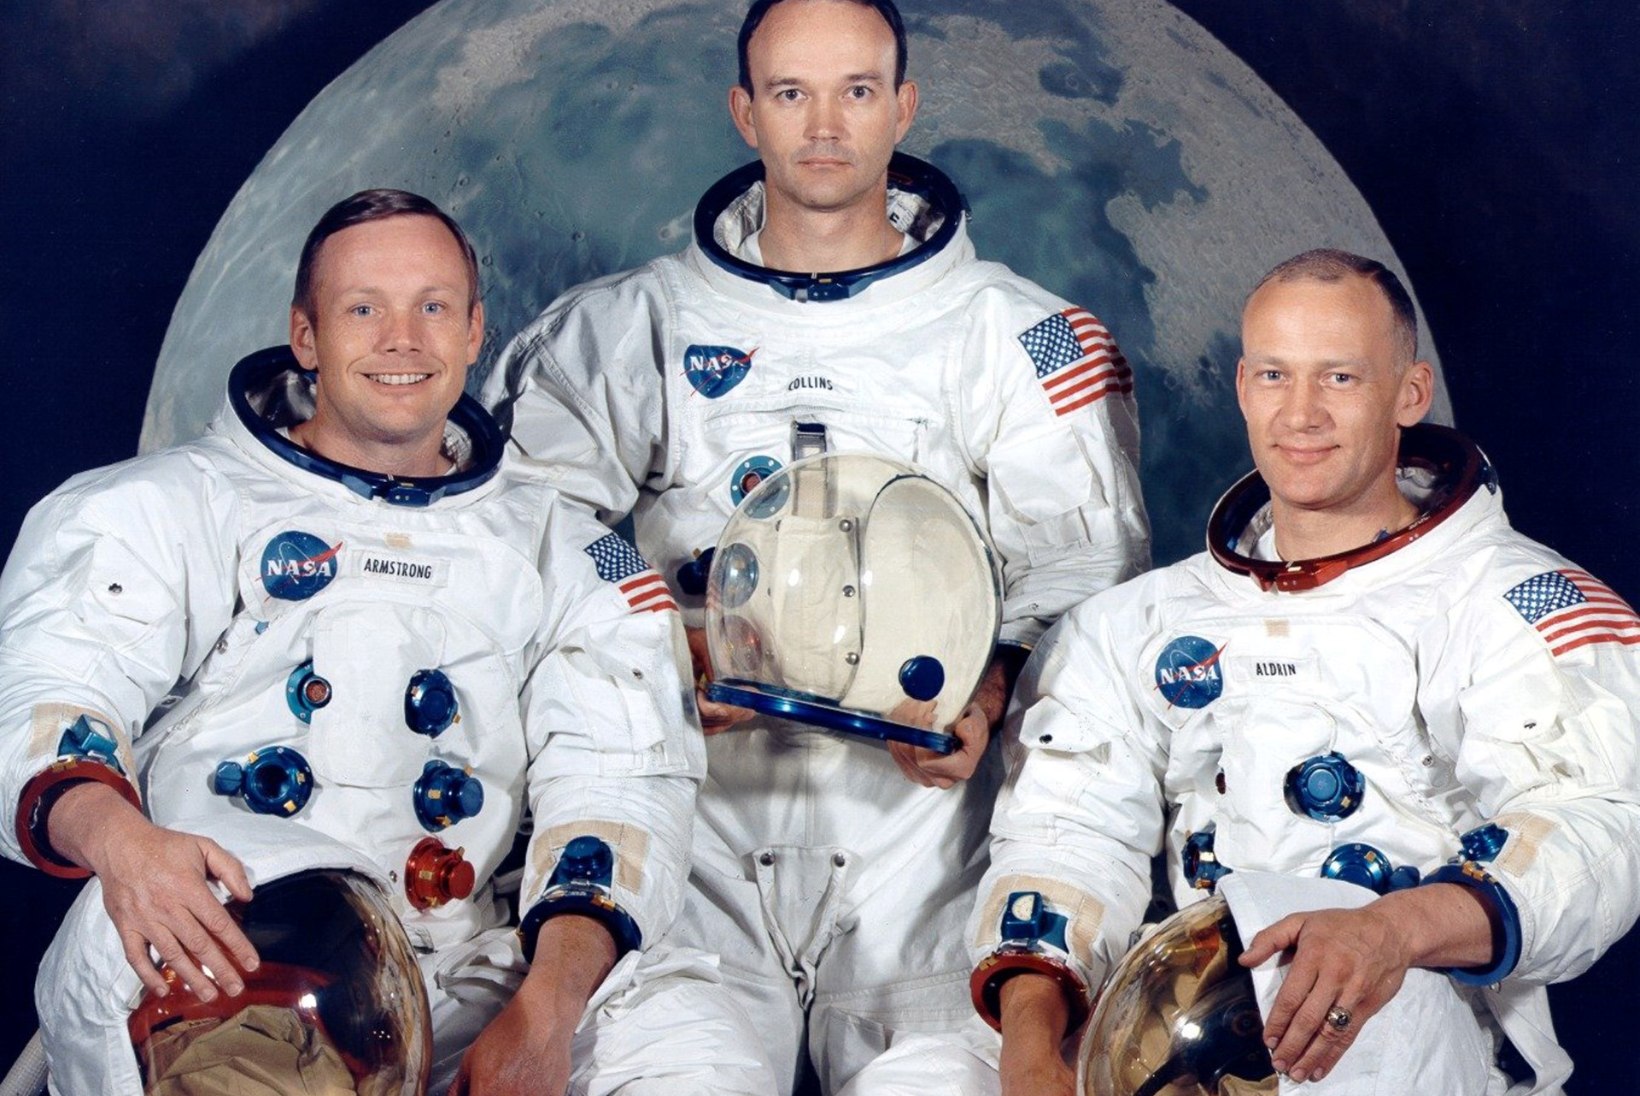 50 AASTAT INIMESTE ESIMESEST LENNUST KUULE: 16. juulil 1969 startis Apollo 11